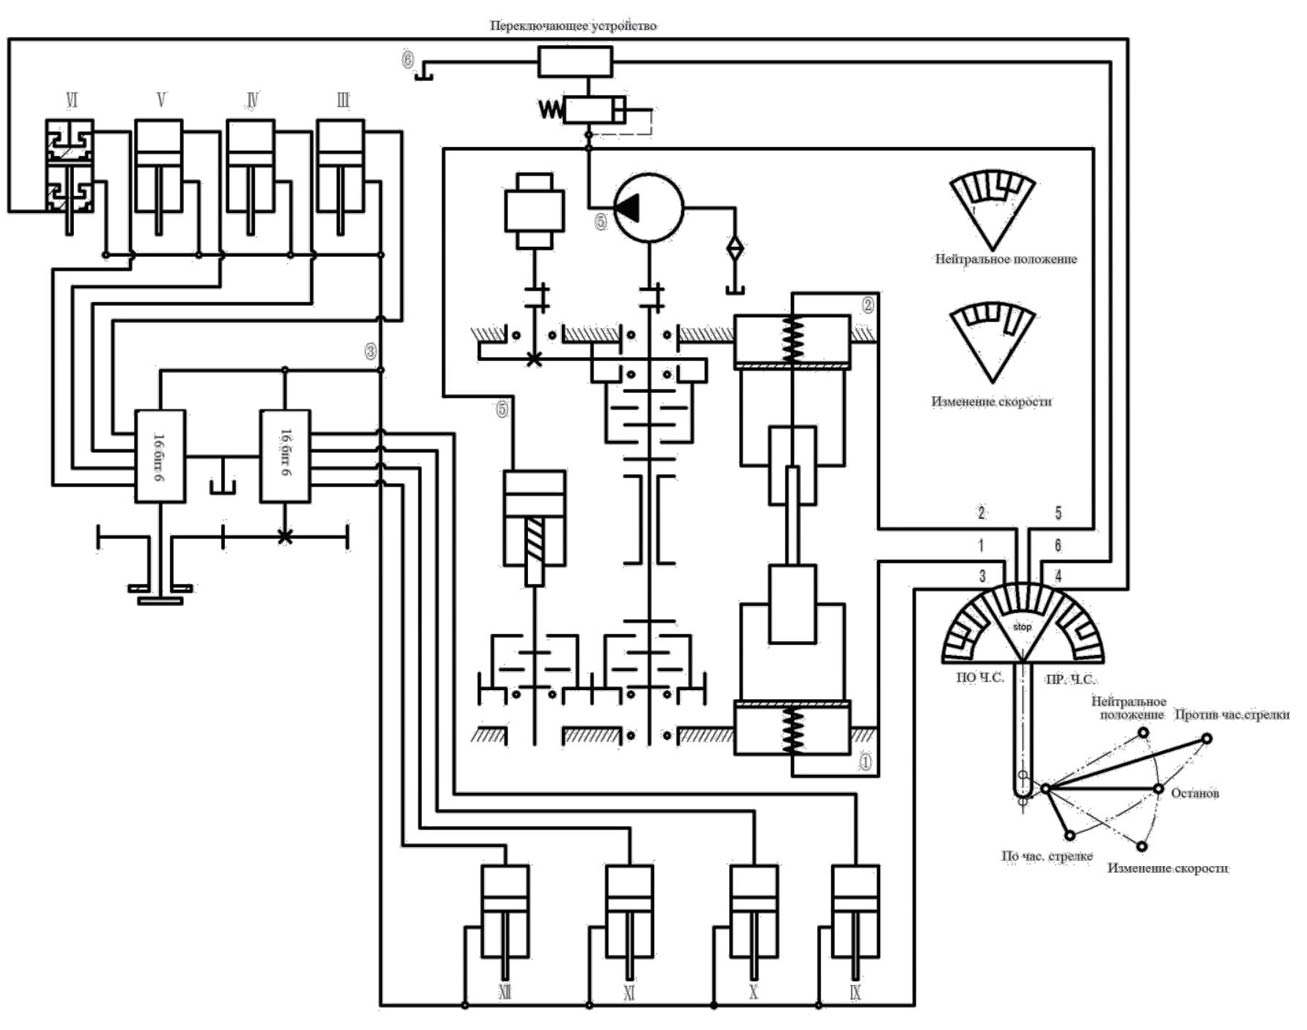 Принципиальная гидравлическая схема станка РС-80МП